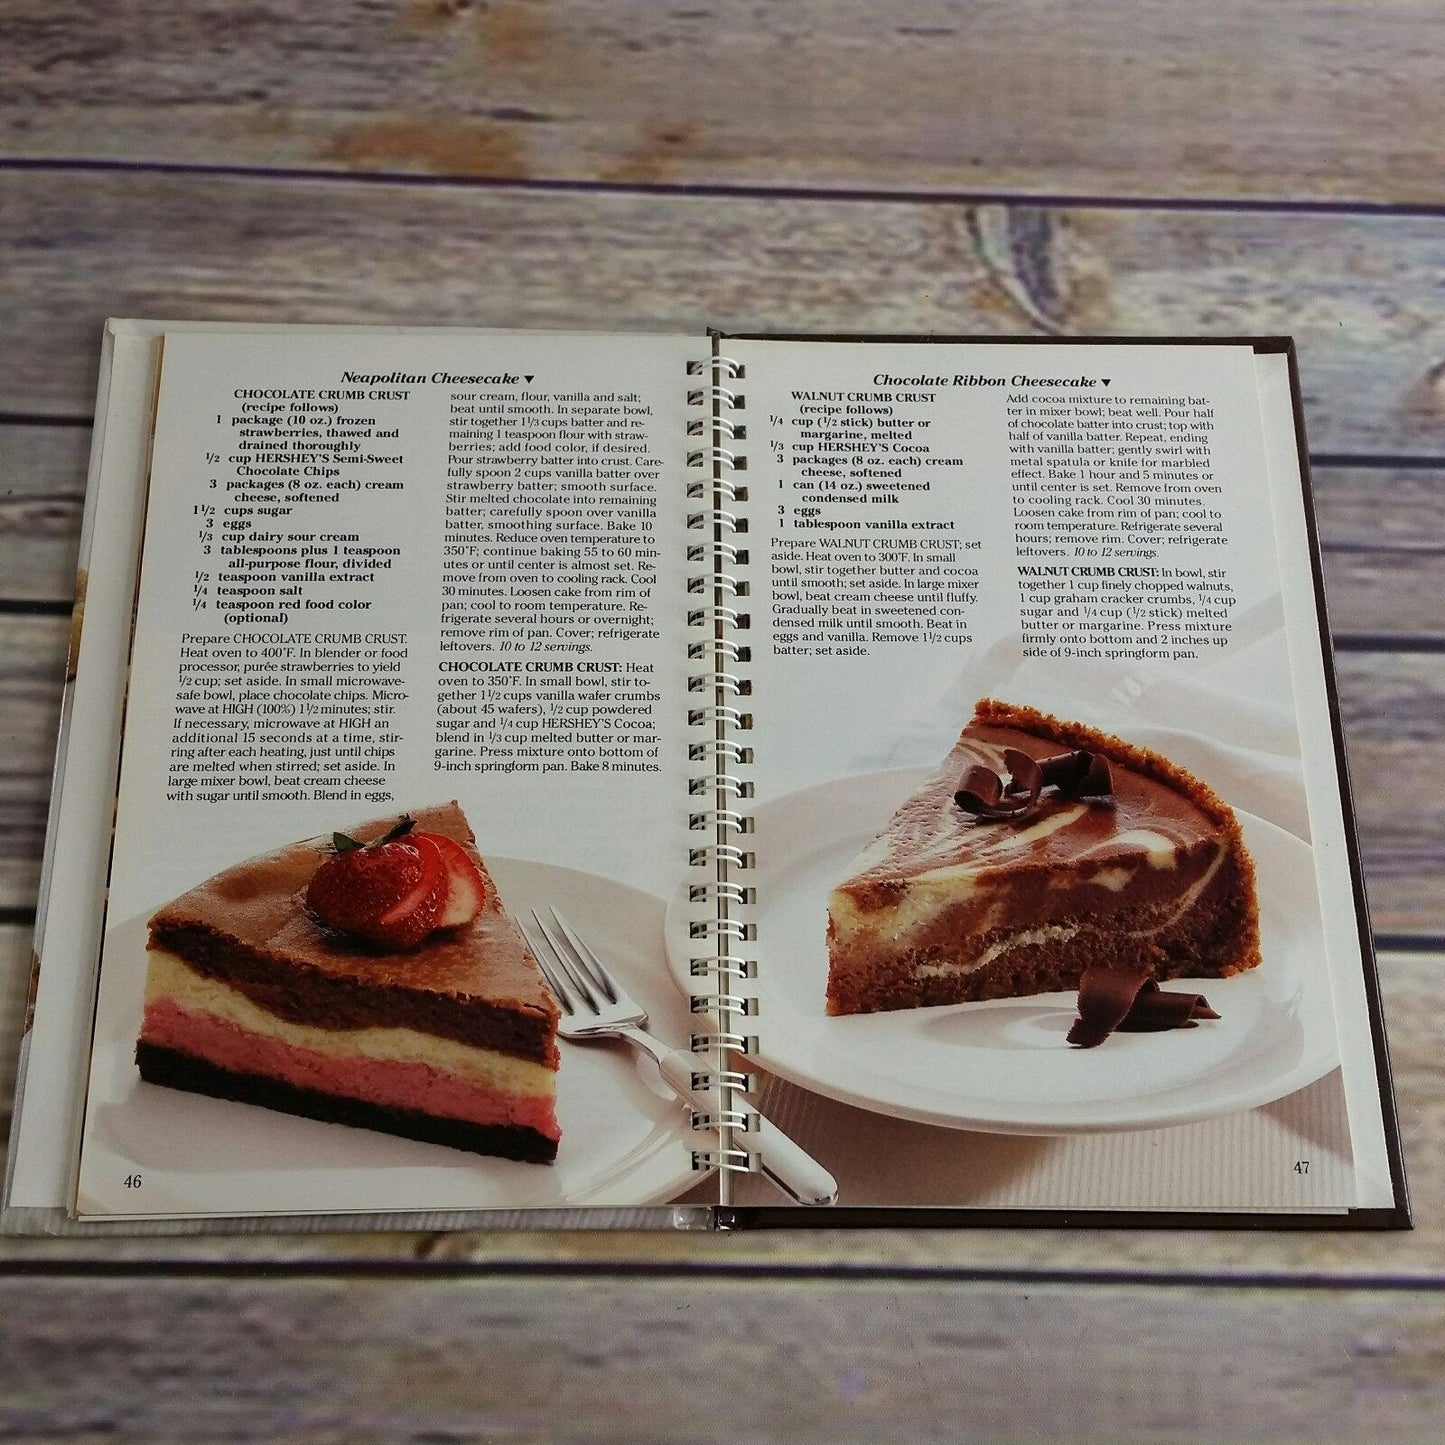 Vintage Cookbook Hersheys Homemade 1991 Hardcover Spiral Bound Over 100 Recipes